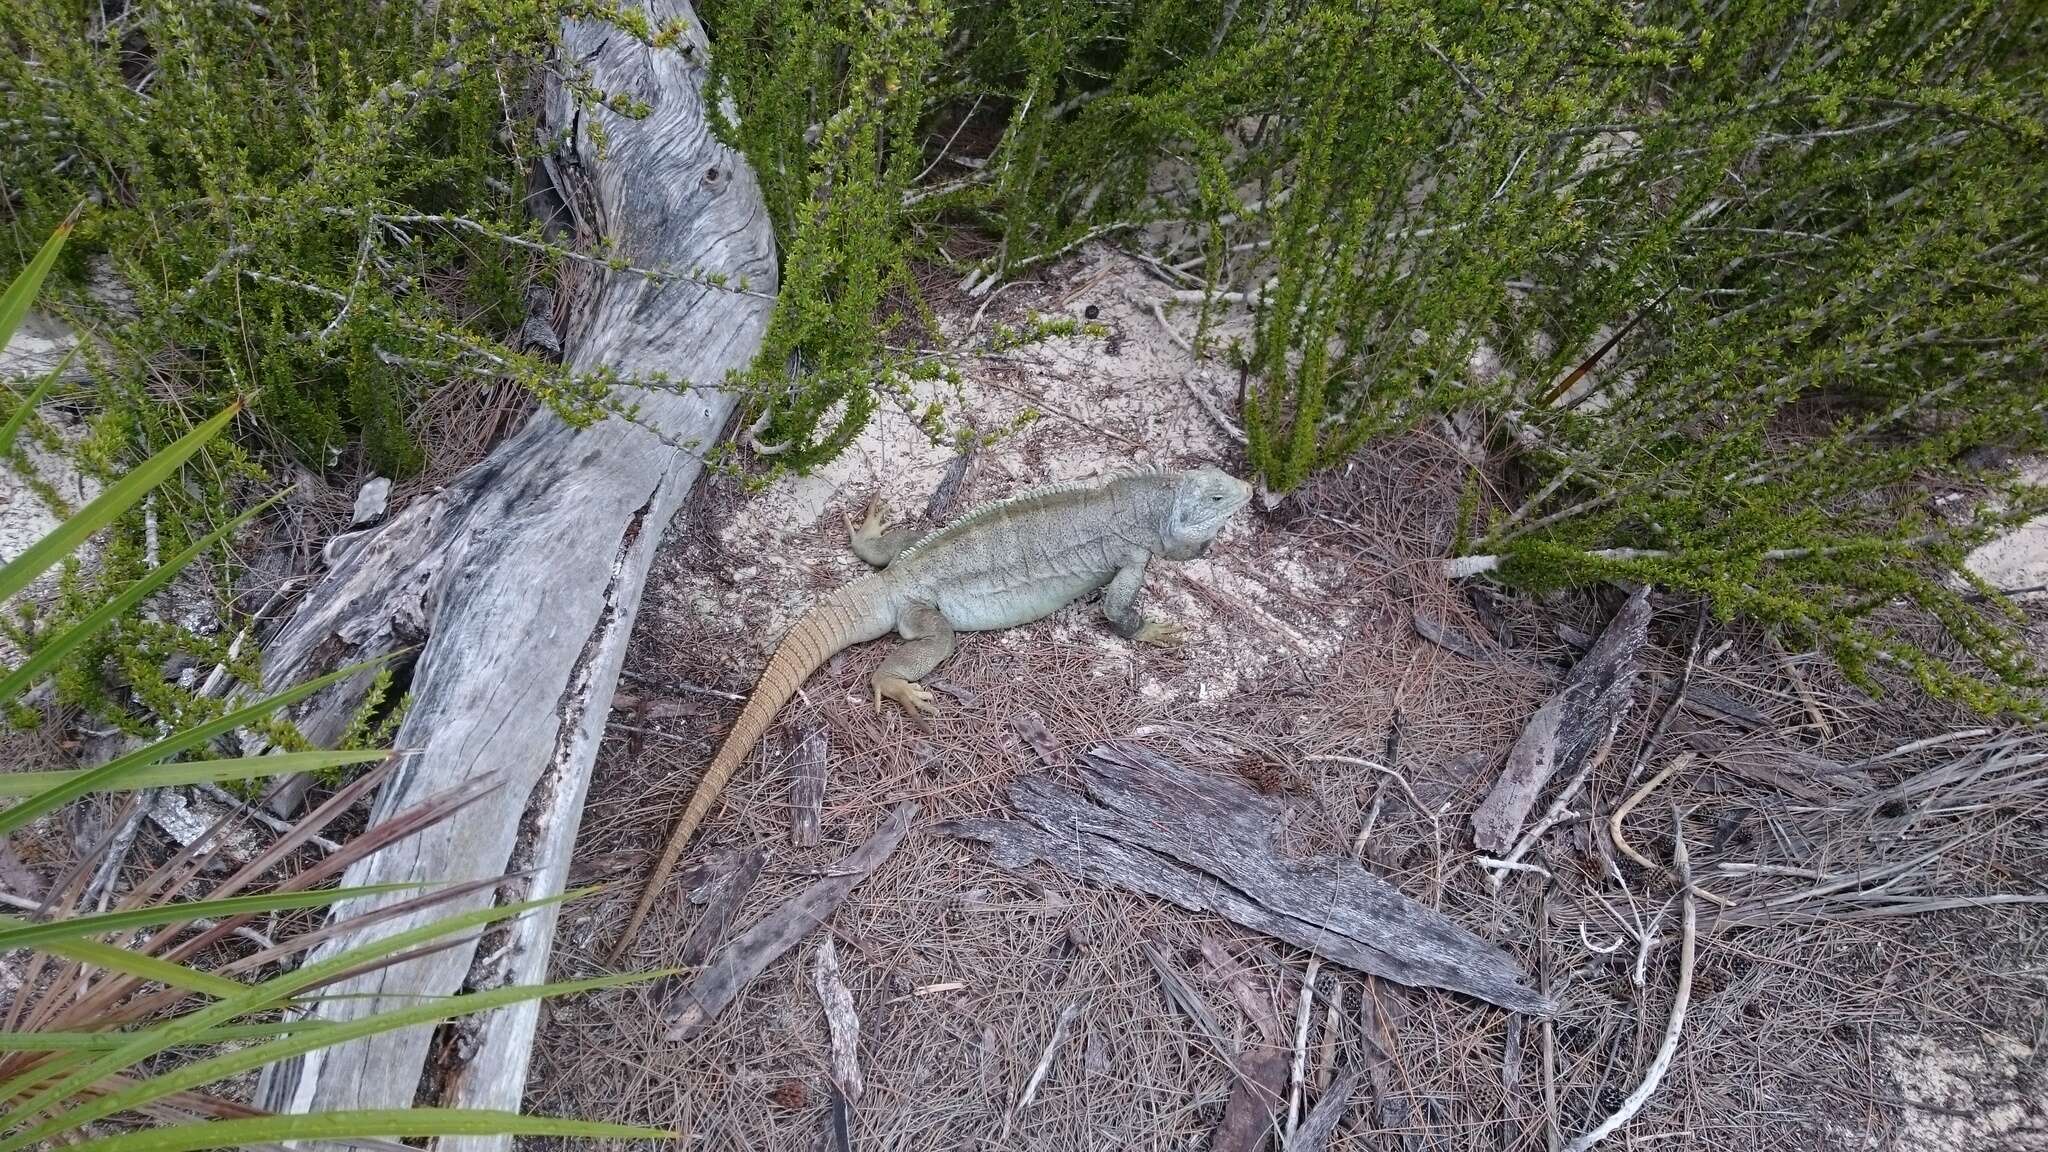 Image of Bahamas Rock Iguana